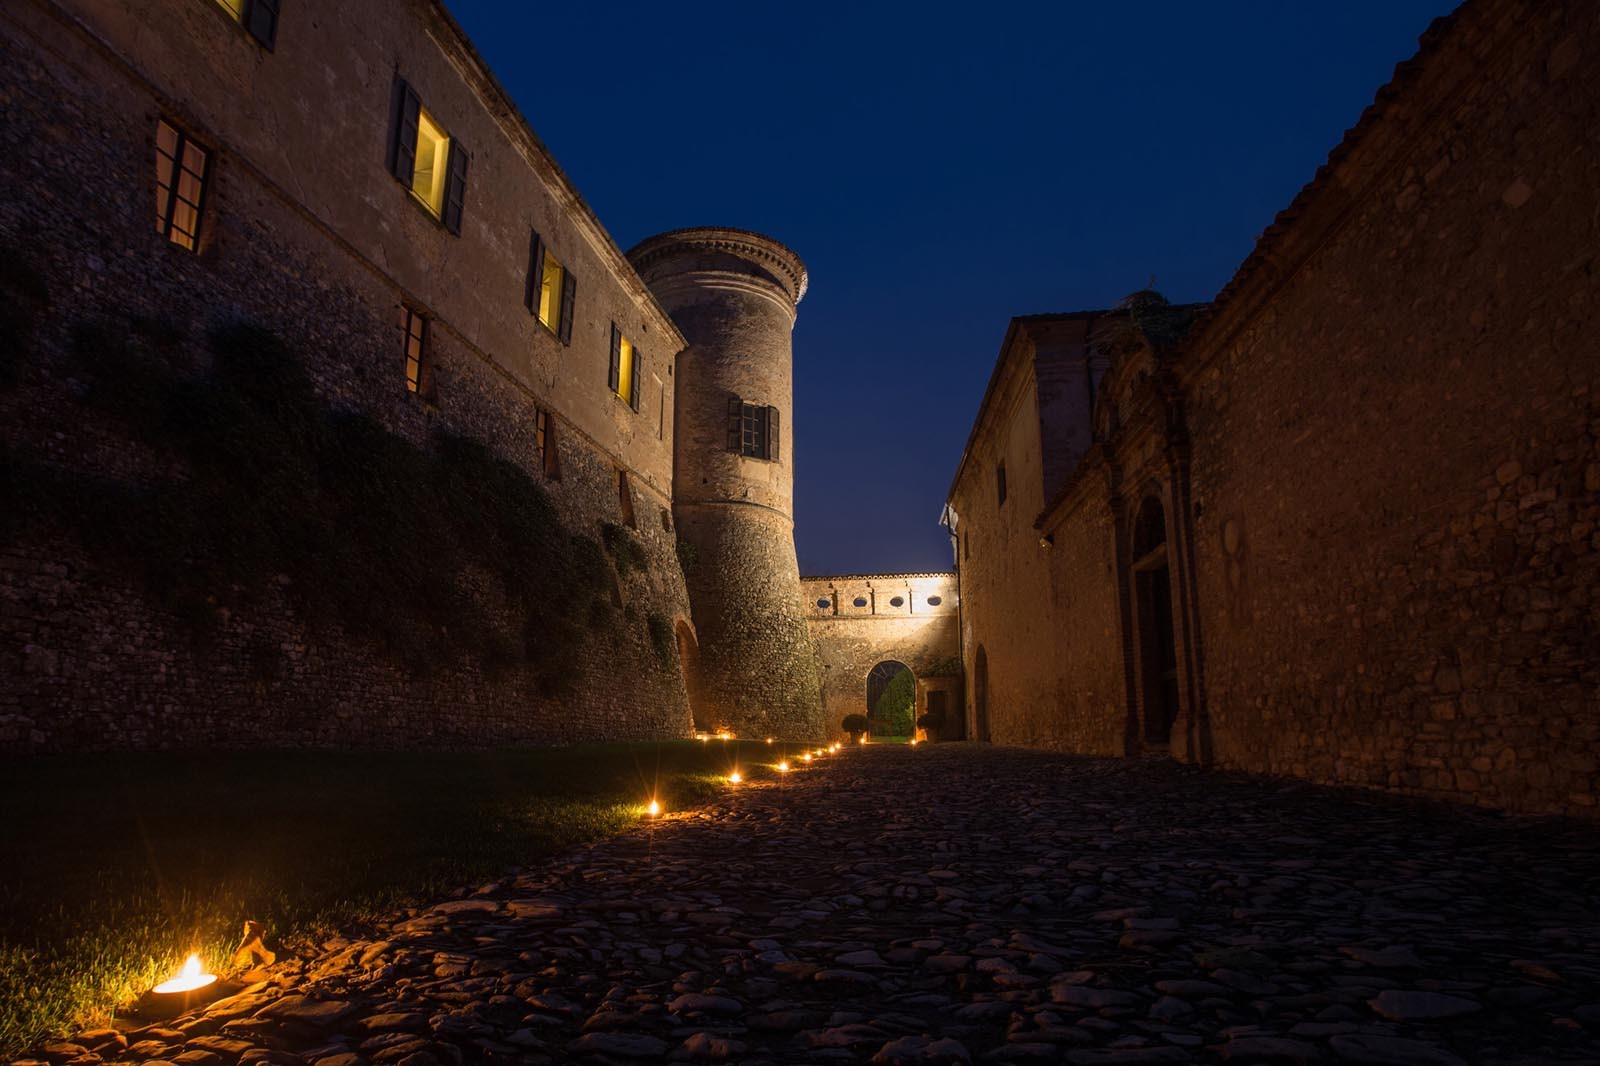 I Misteri del Castello Millenario  Nel labirinto del Castello più antico del Parmense visita notturna alla scoperta dei suoi luoghi segreti